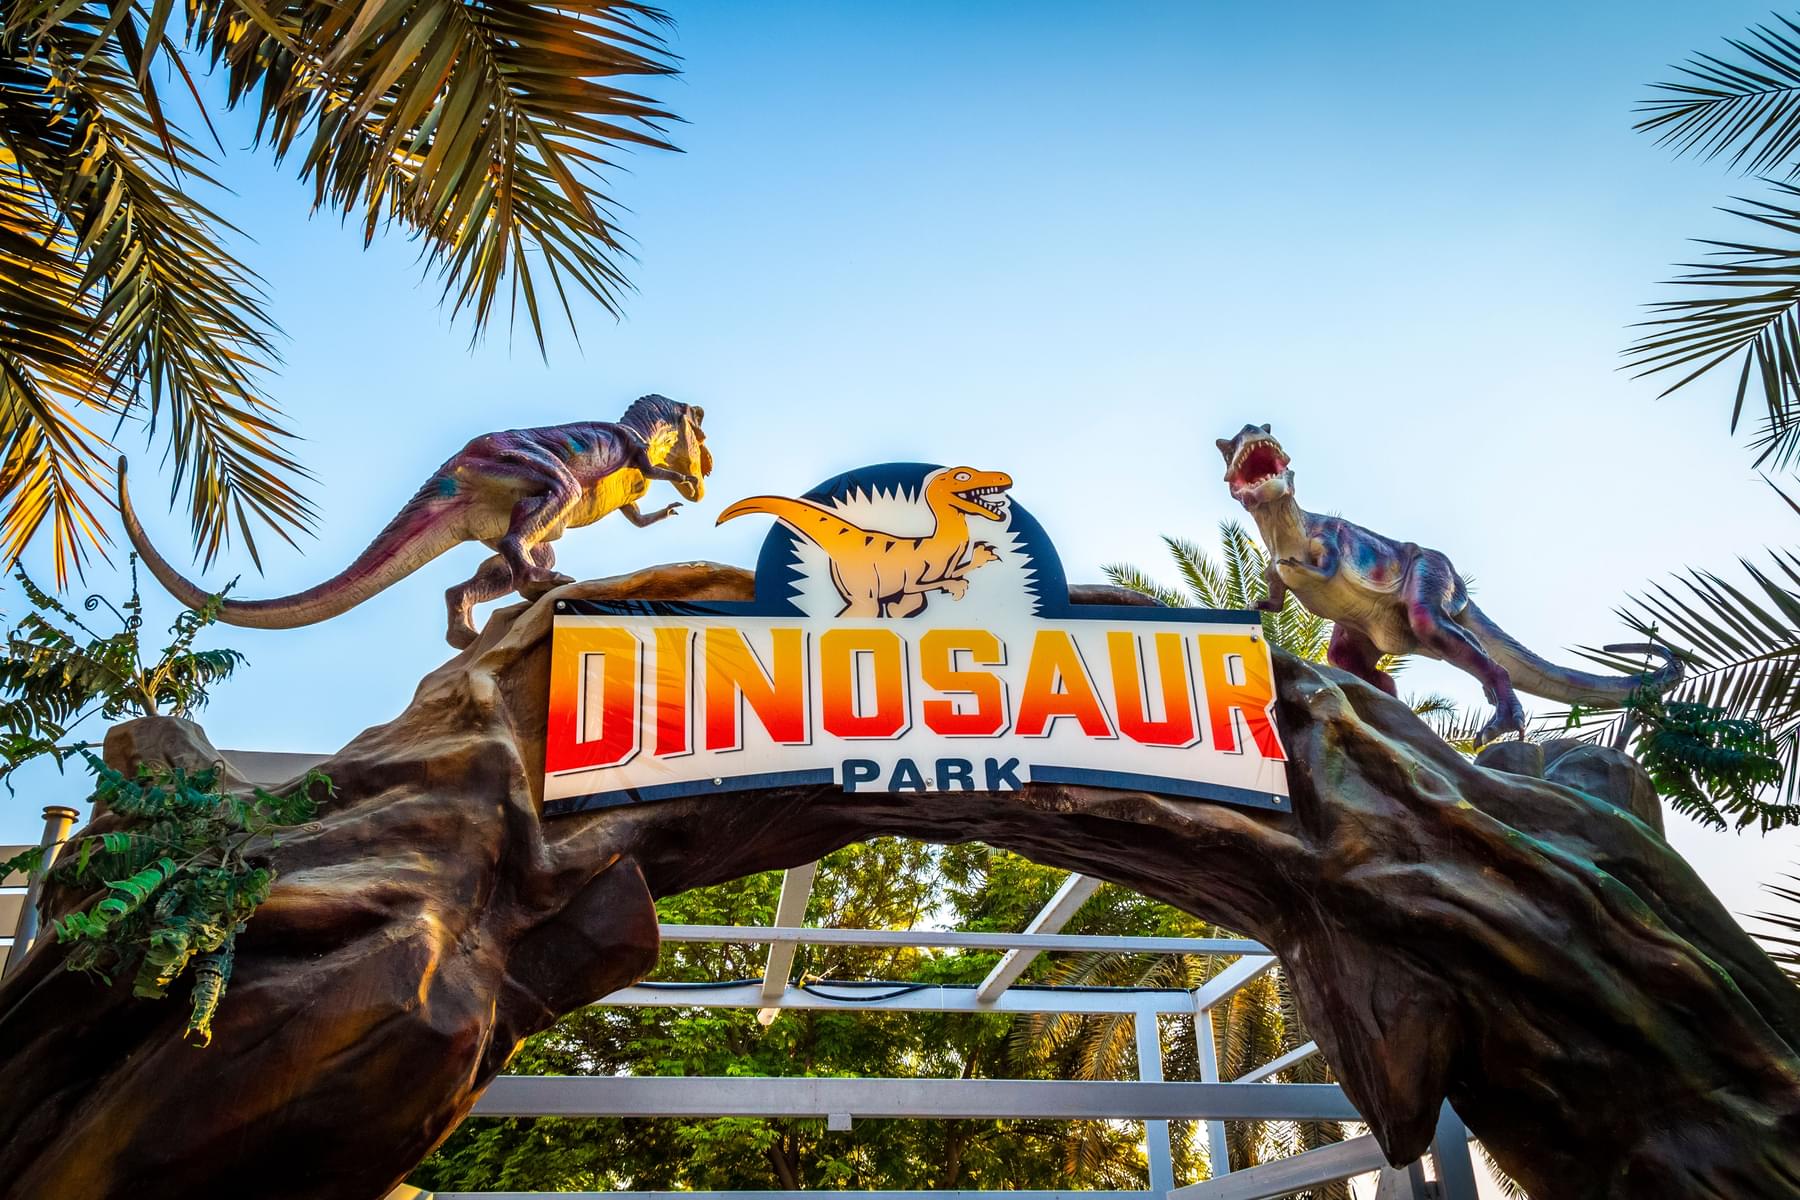 Tips while Visiting Dinosaur Park Dubai